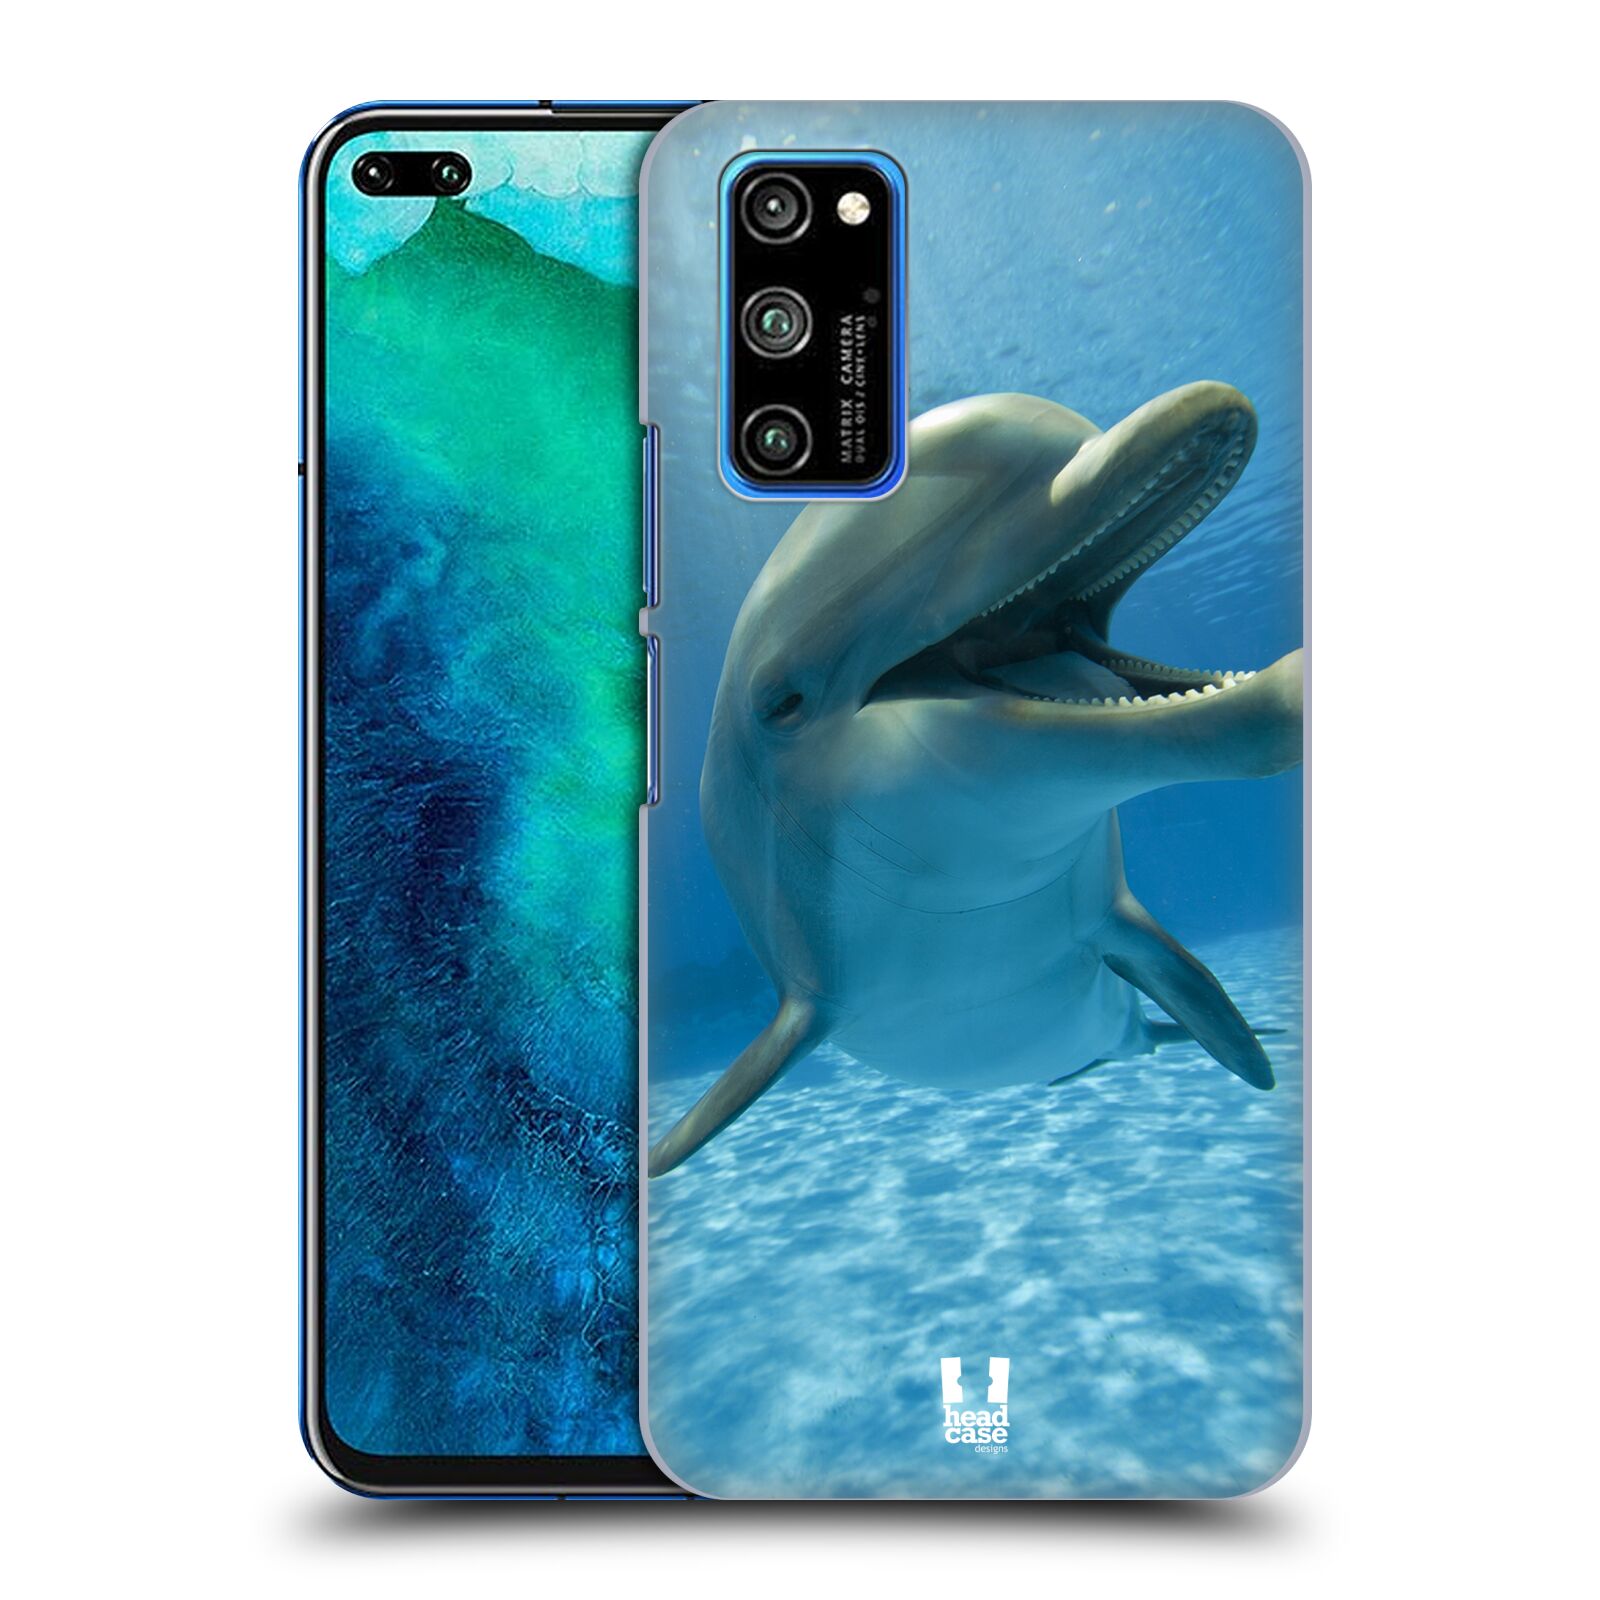 Zadní obal pro mobil Honor View 30 PRO - HEAD CASE - Svět zvířat delfín v moři